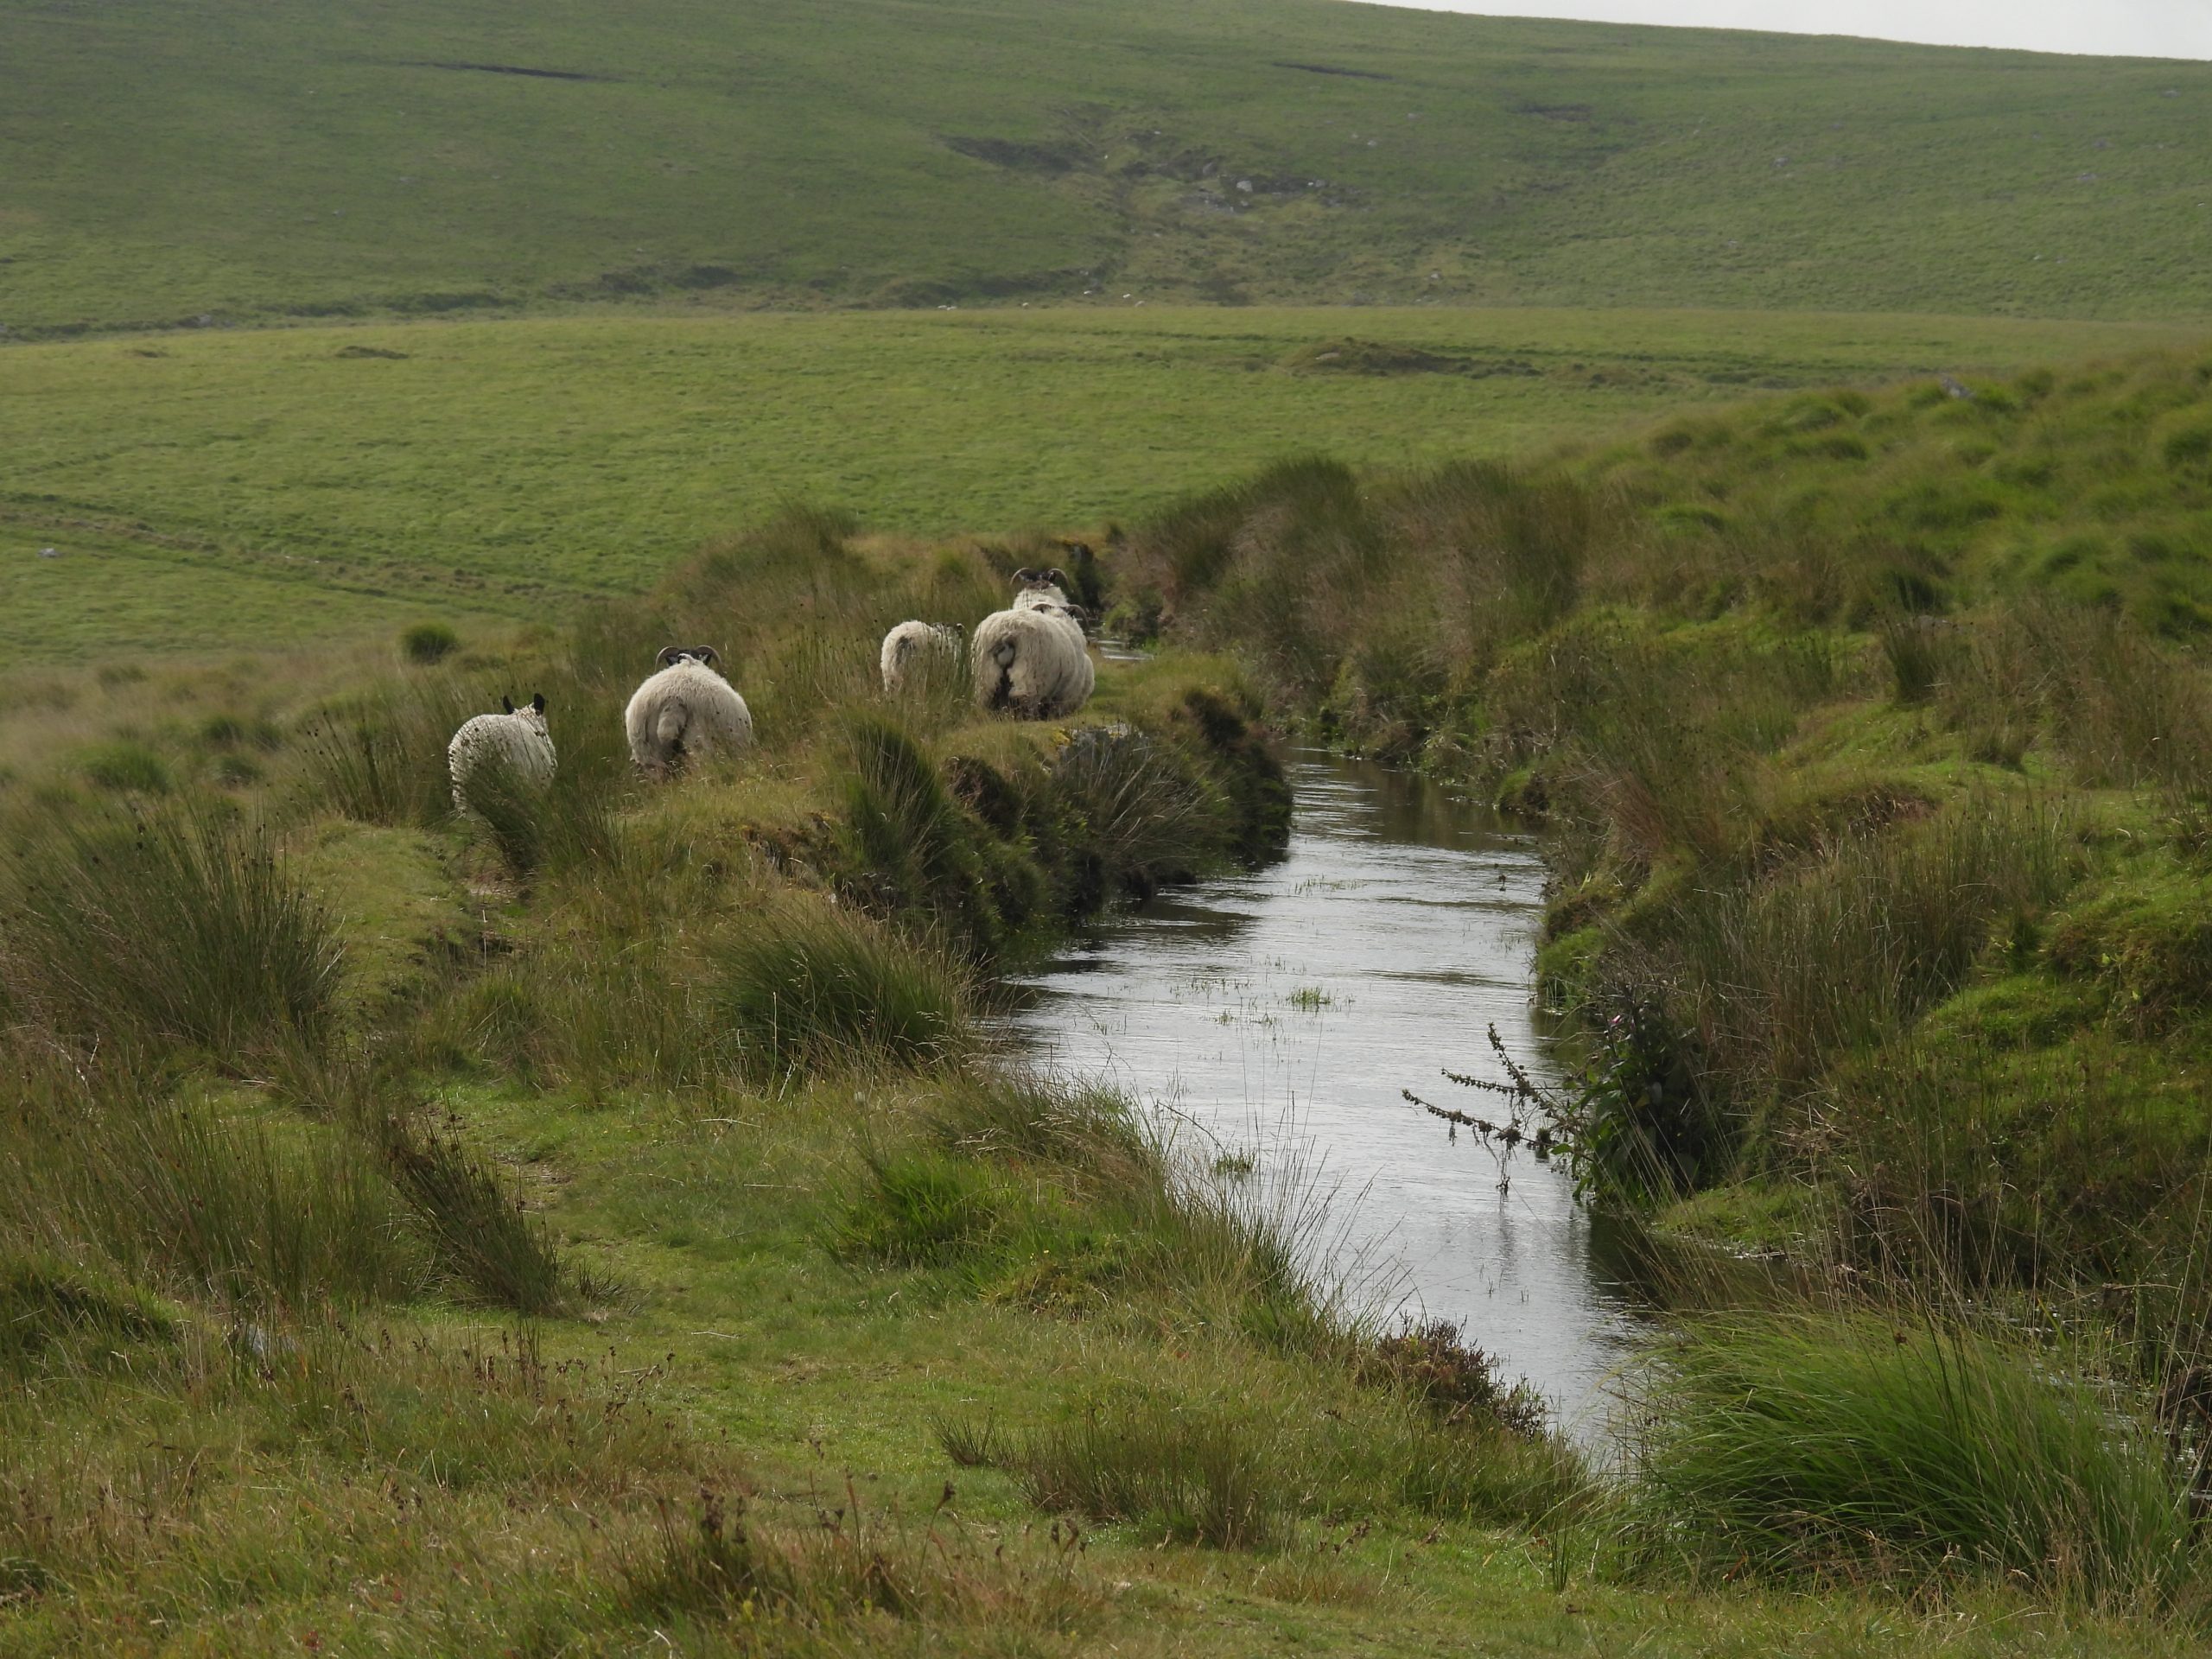 7. Follow the sheep a